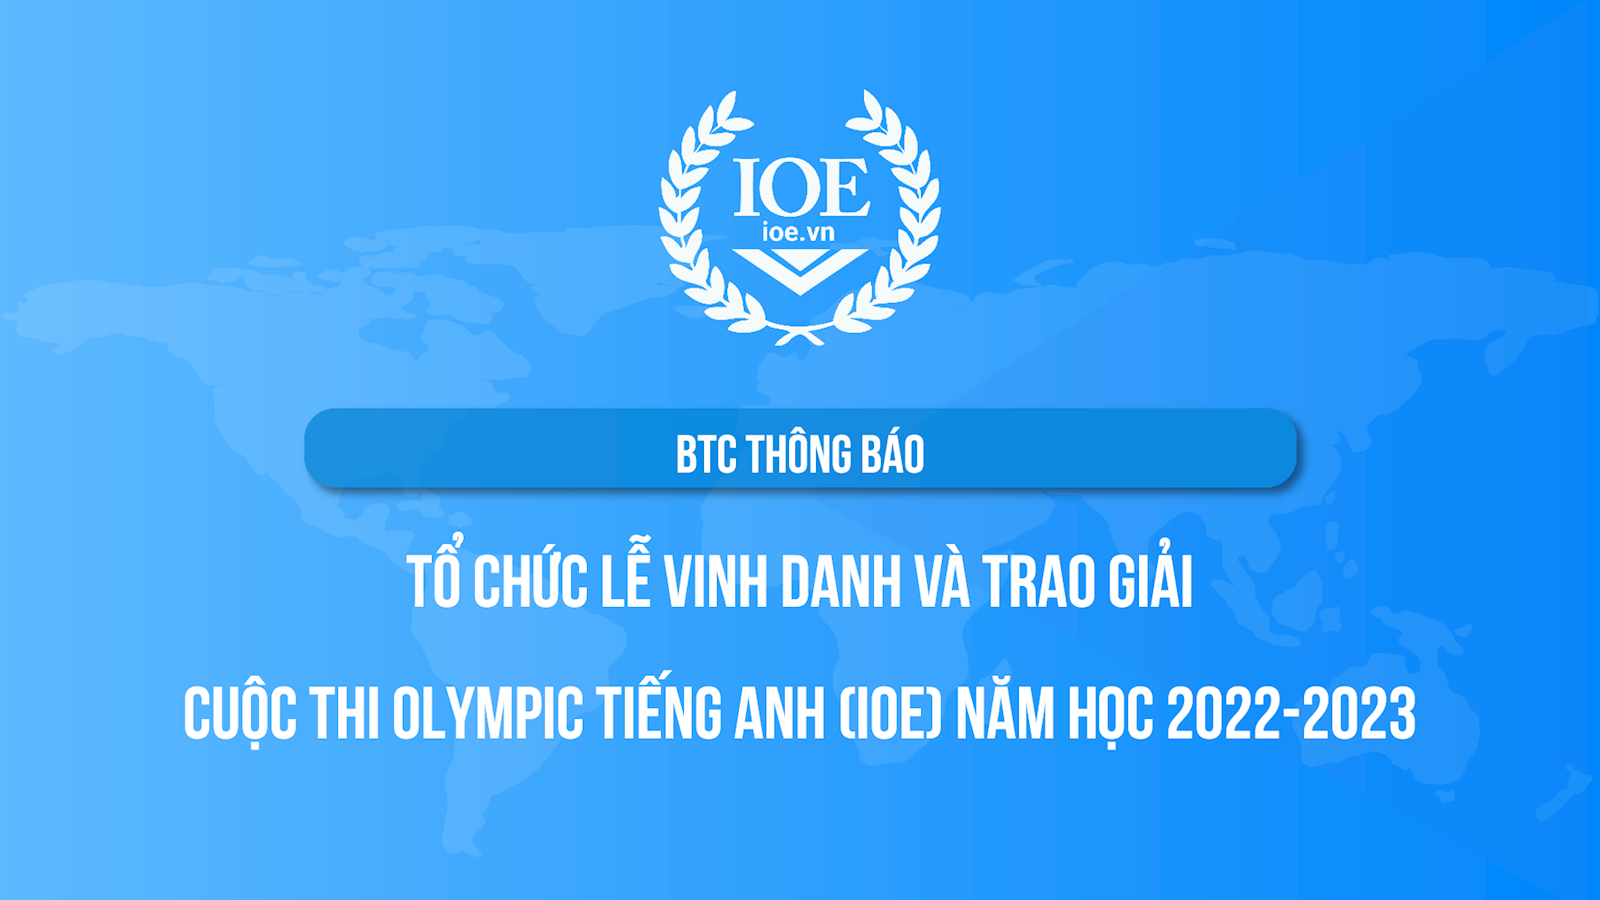 BTC thông báo tổ chức Lễ Vinh danh và Trao giải cuộc thi Olympic Tiếng Anh (IOE) năm học 2022-2023